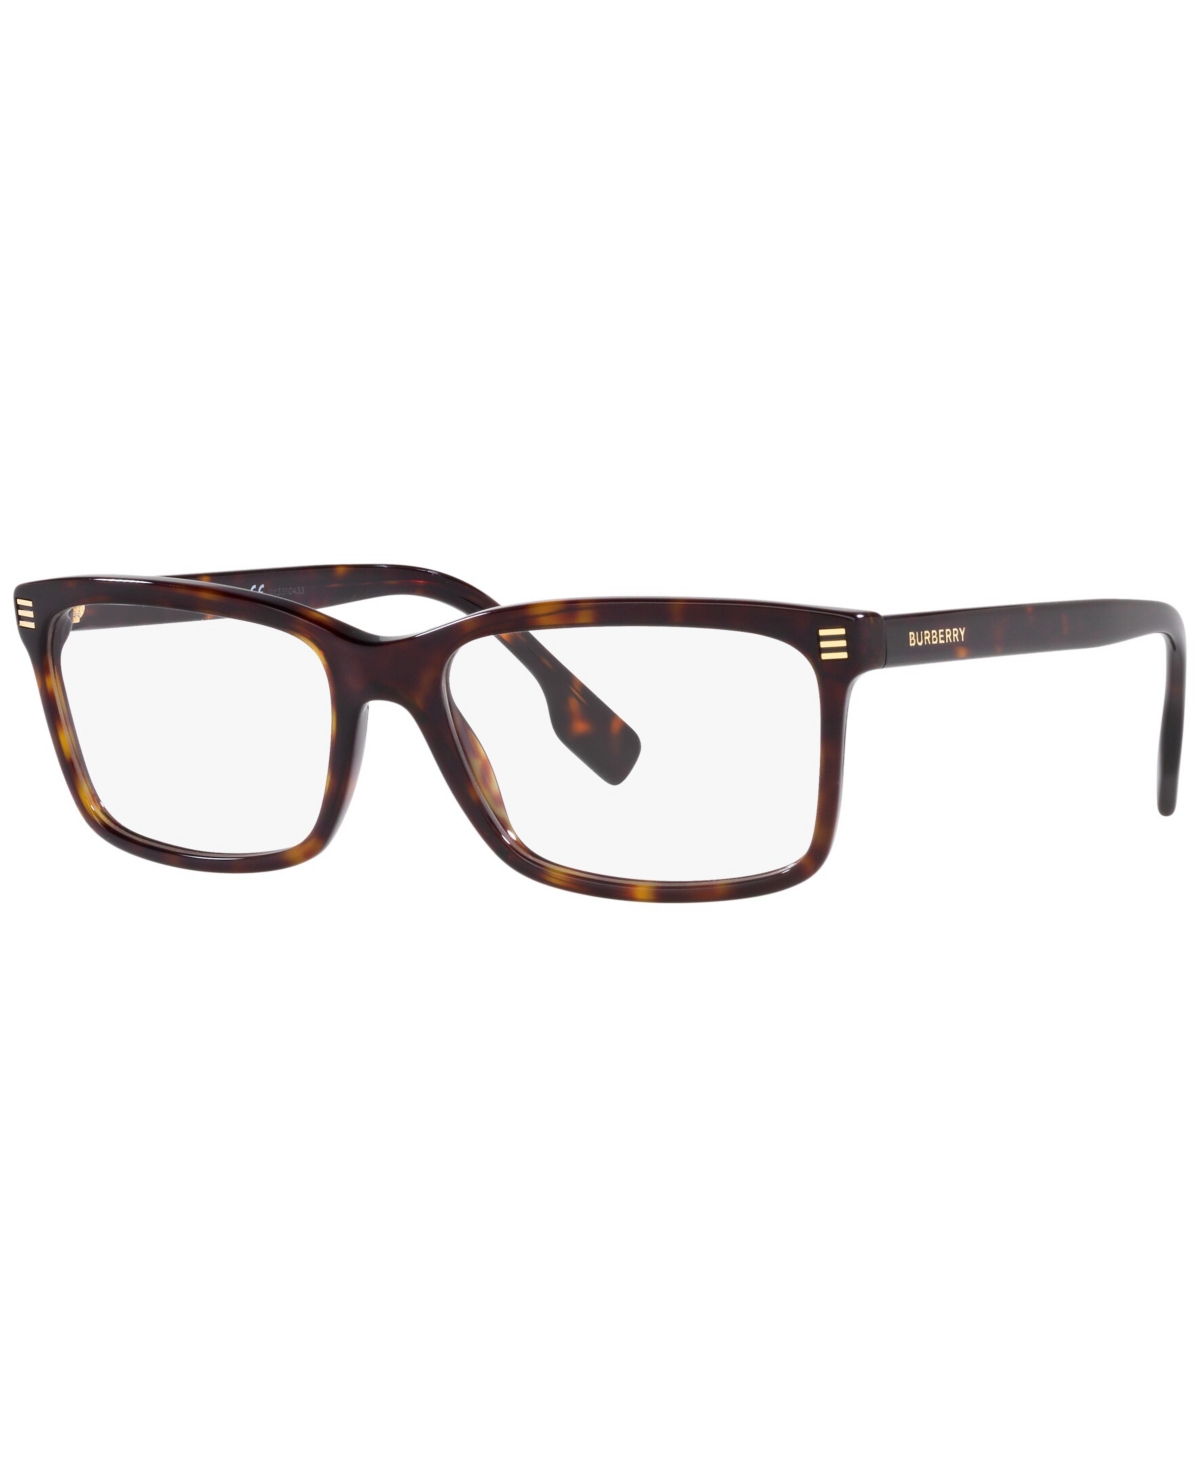 BE2352 Foster Men's Rectangle Eyeglasses - Black